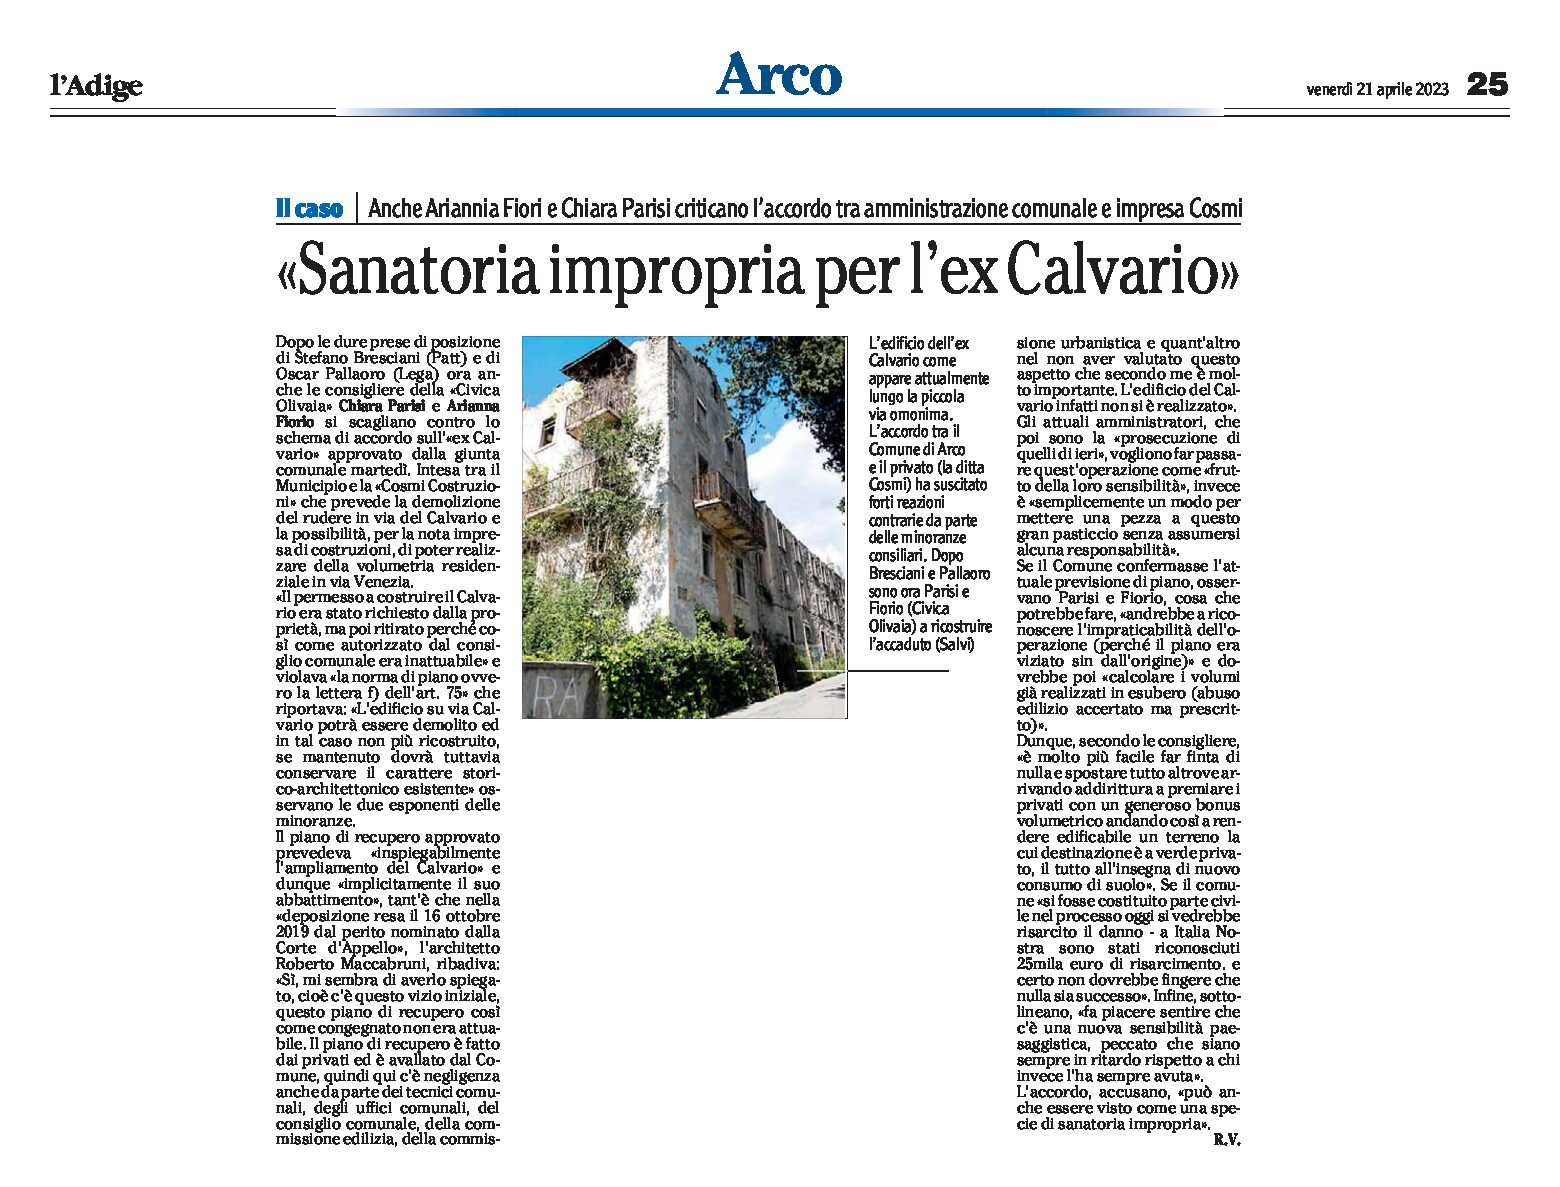 Arco, ex Calvario: “sanatoria impropria” anche Fiorio e Parisi criticano l’accordo